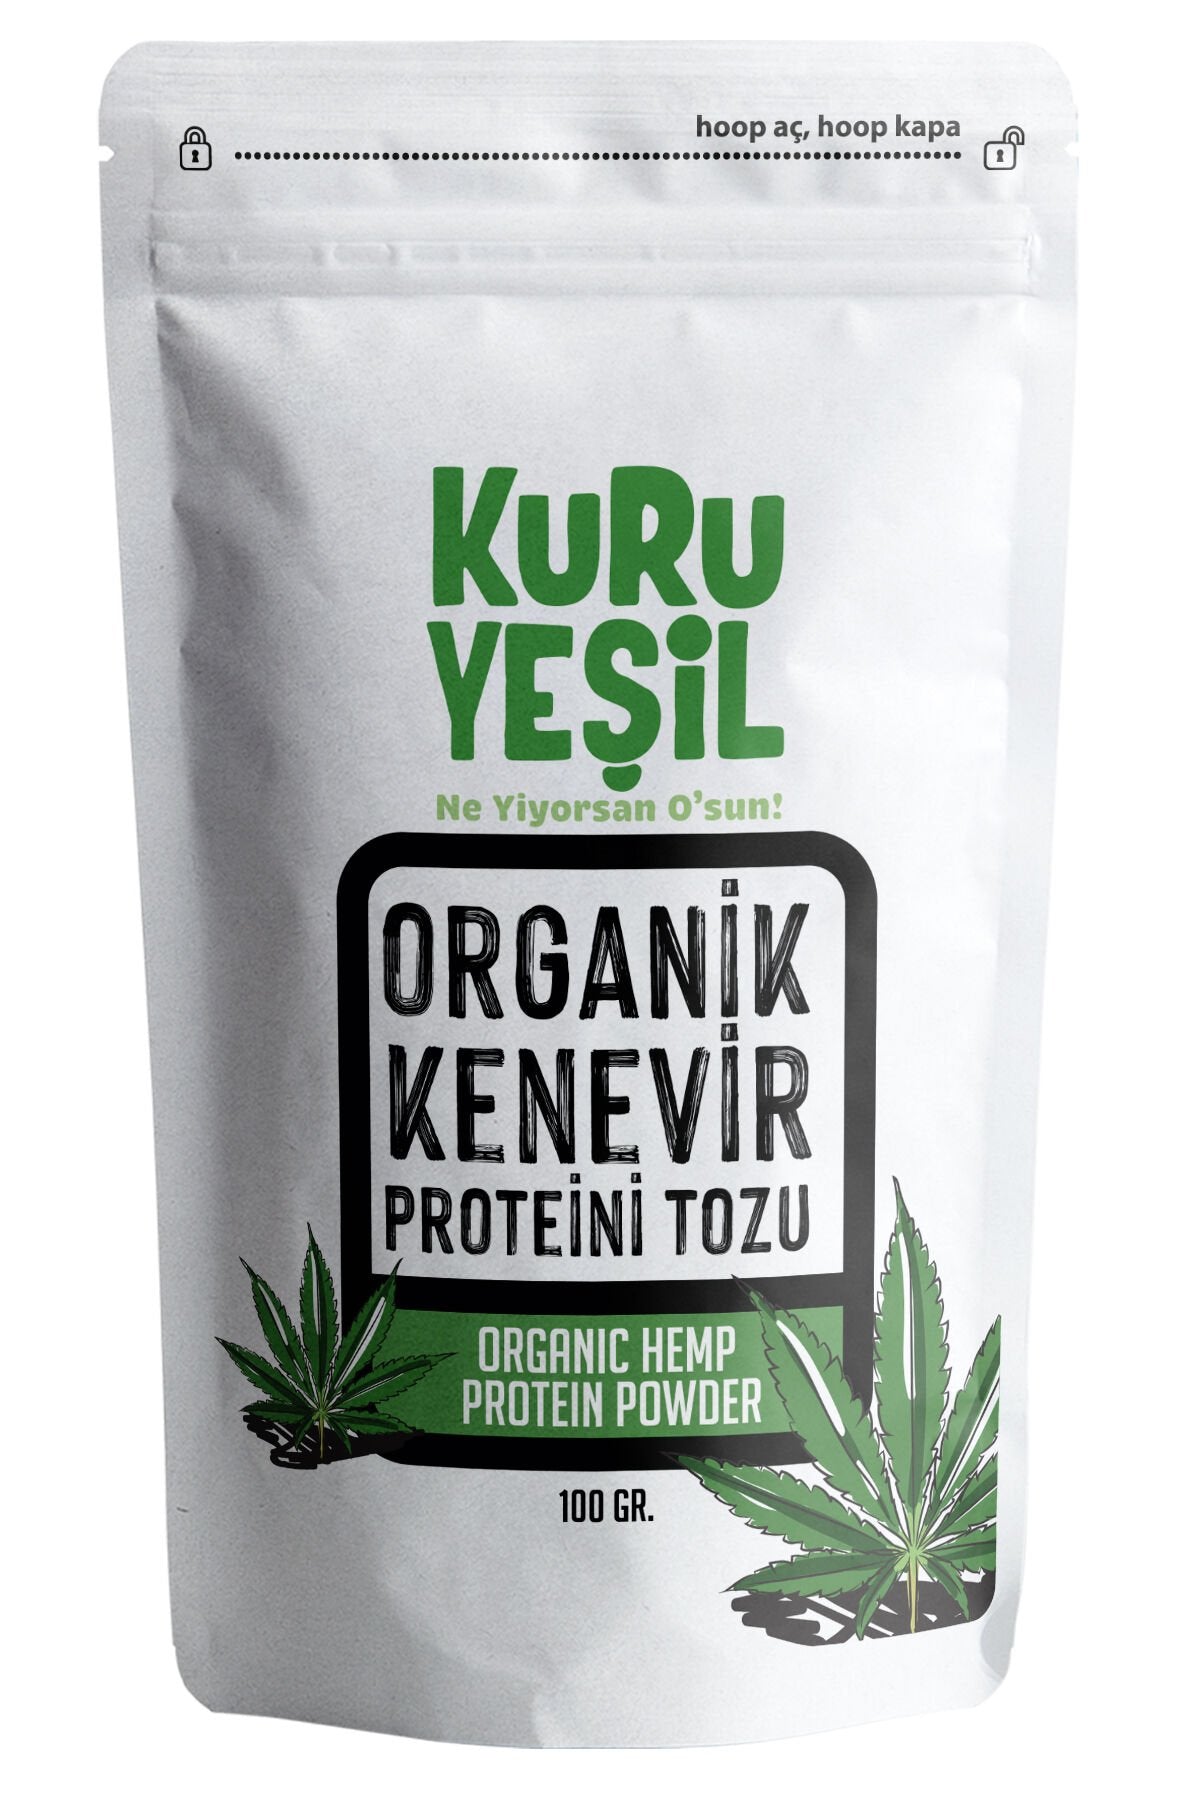 kuru yeşil hemp protein powder 100g 1